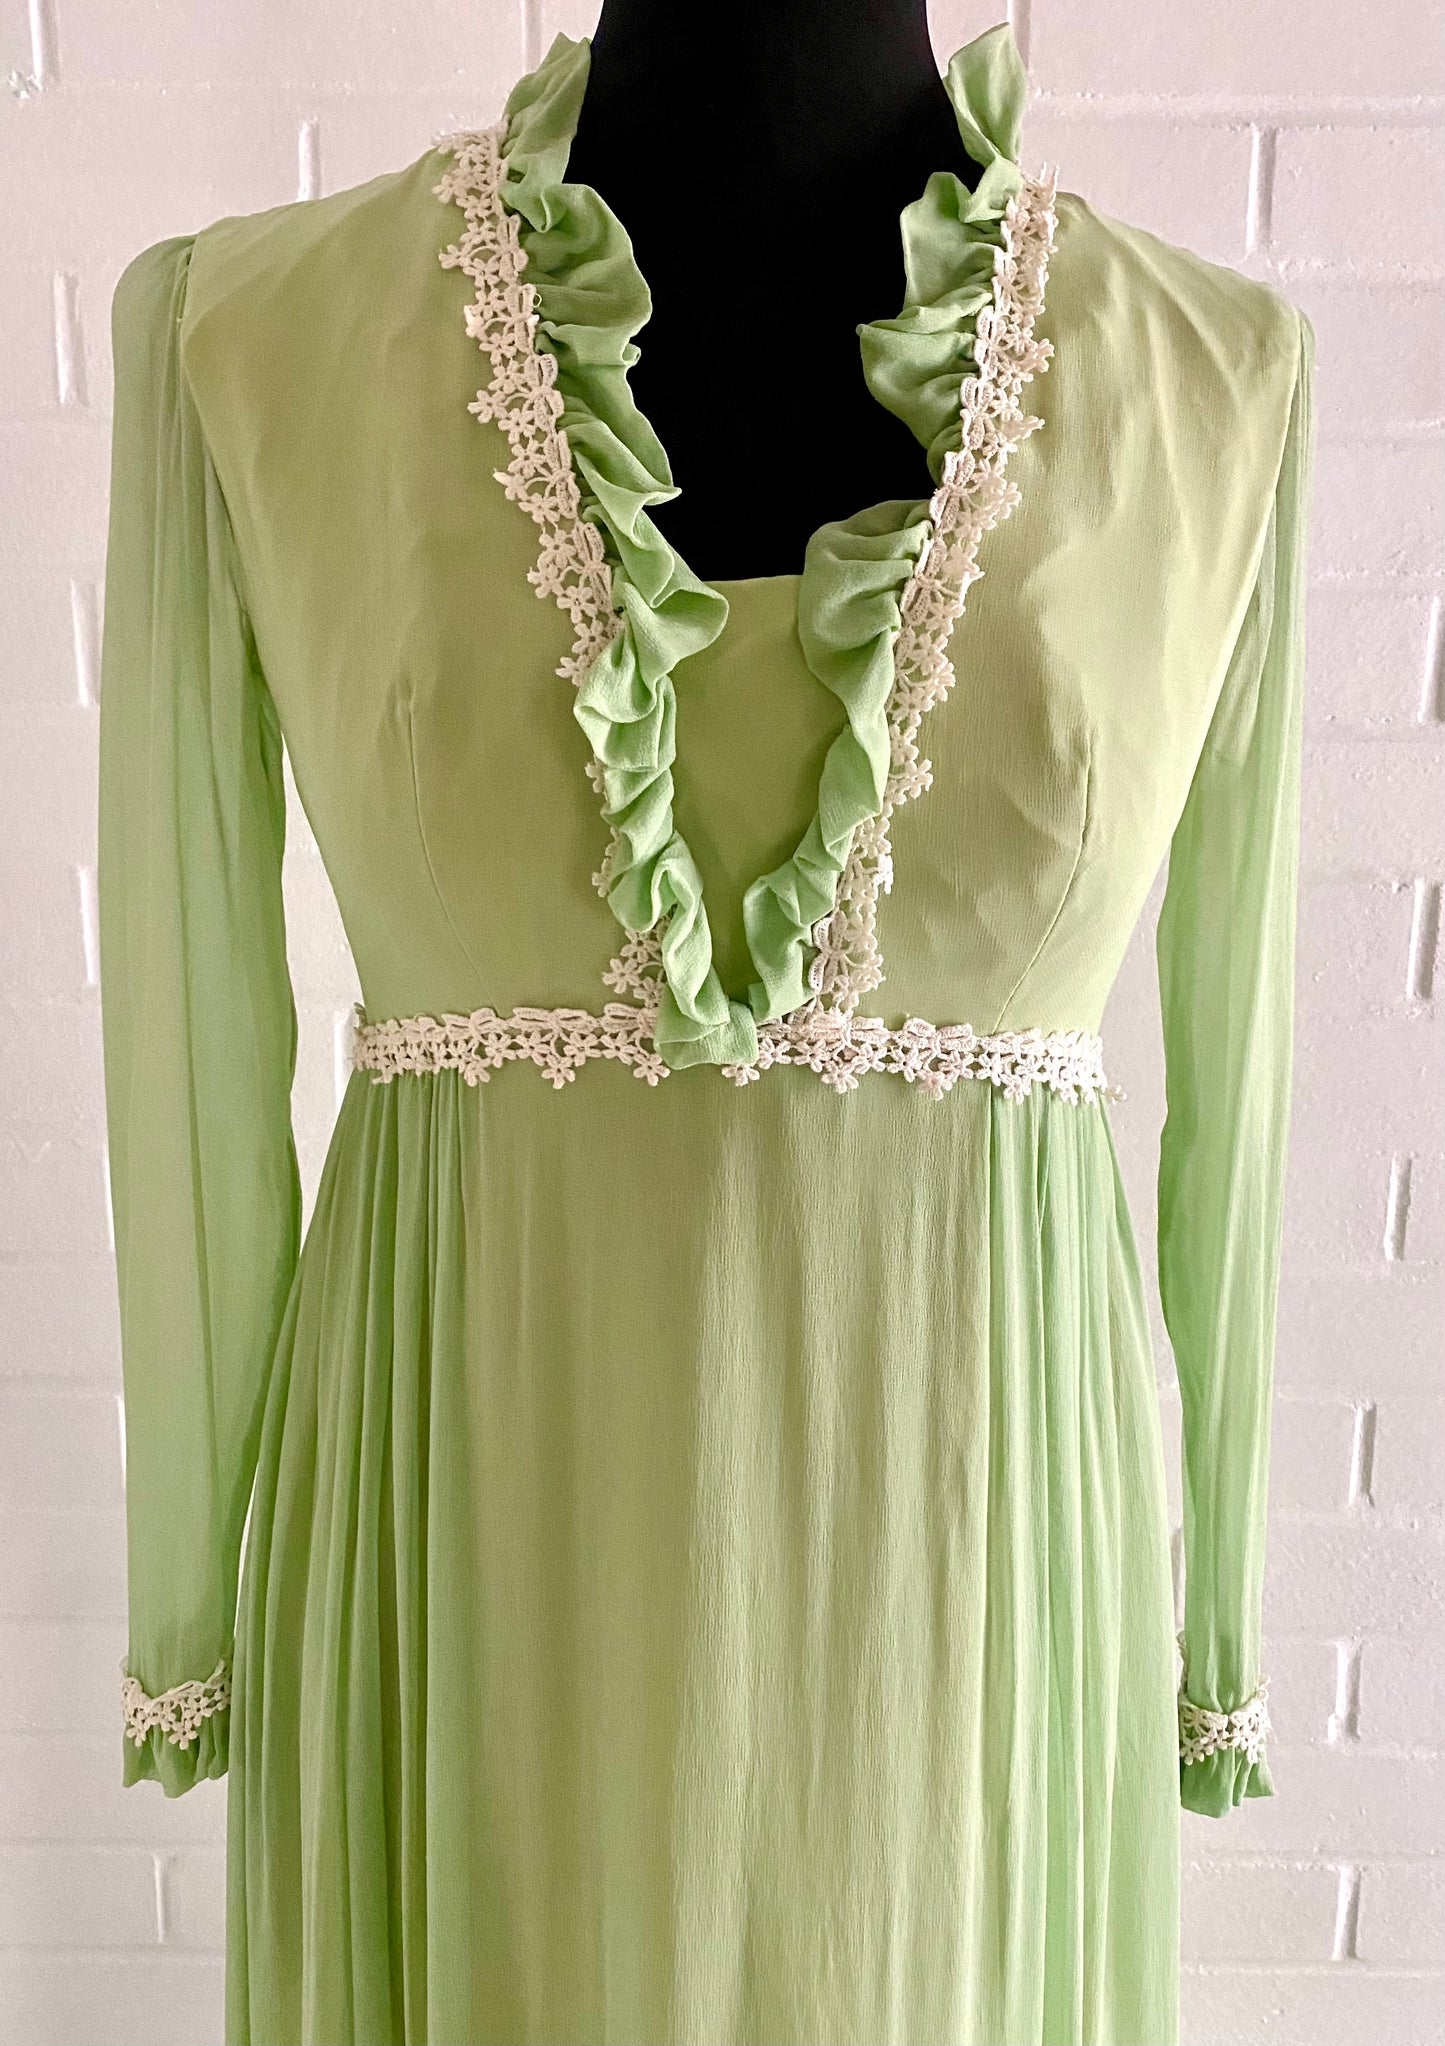 1960s Light Green Chiffon & Taffeta Maxi Dress